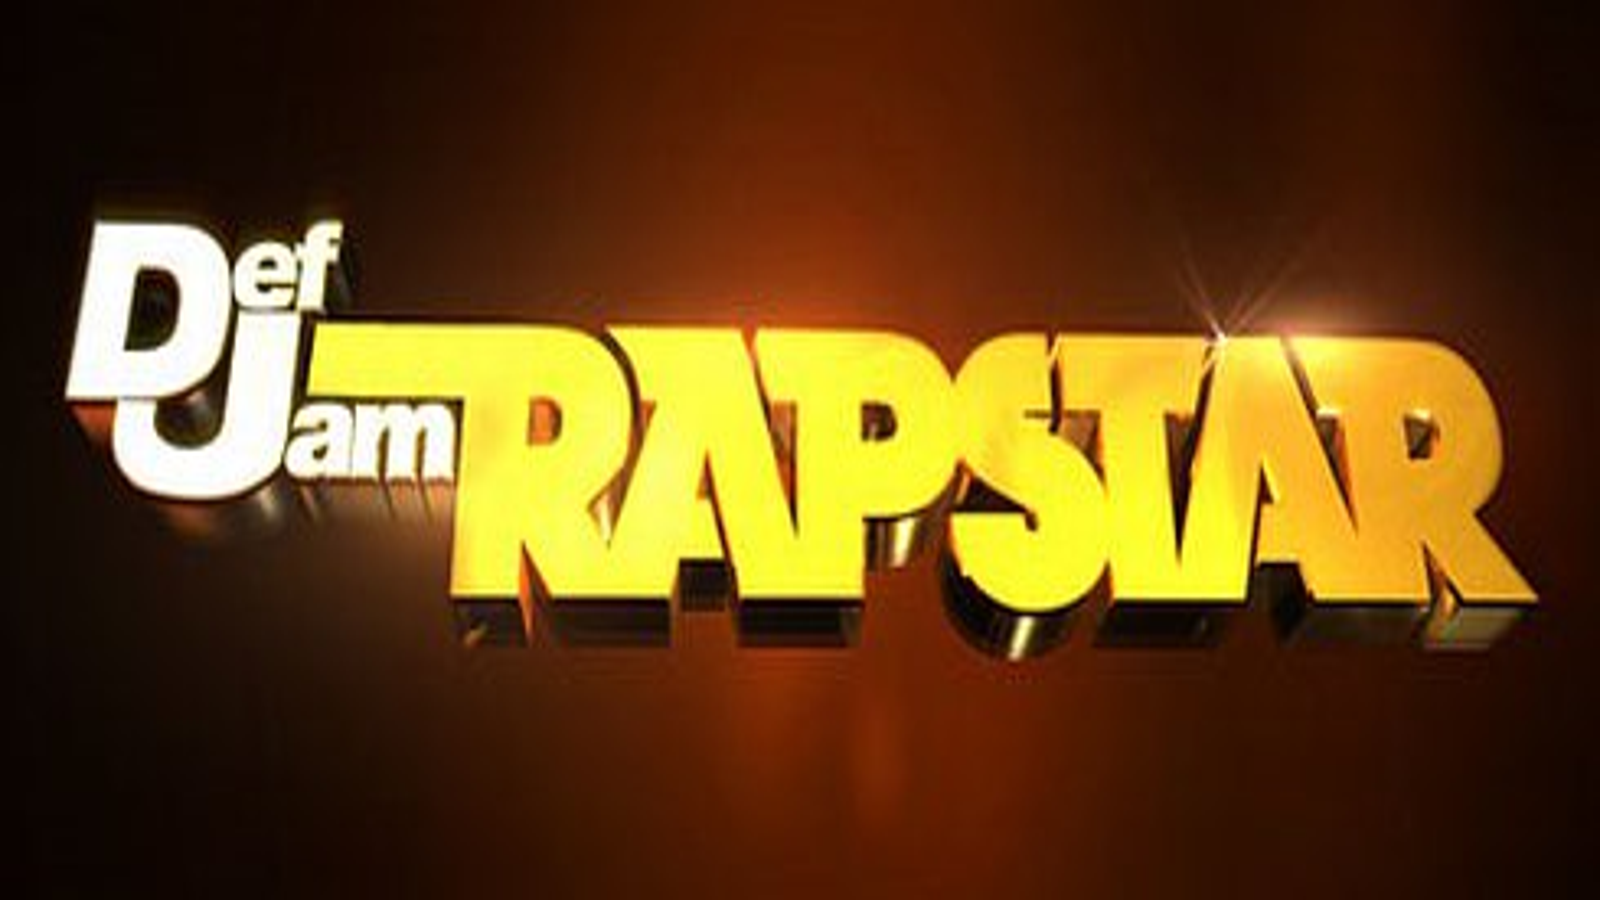 Def Jam: Rapstar trailer 